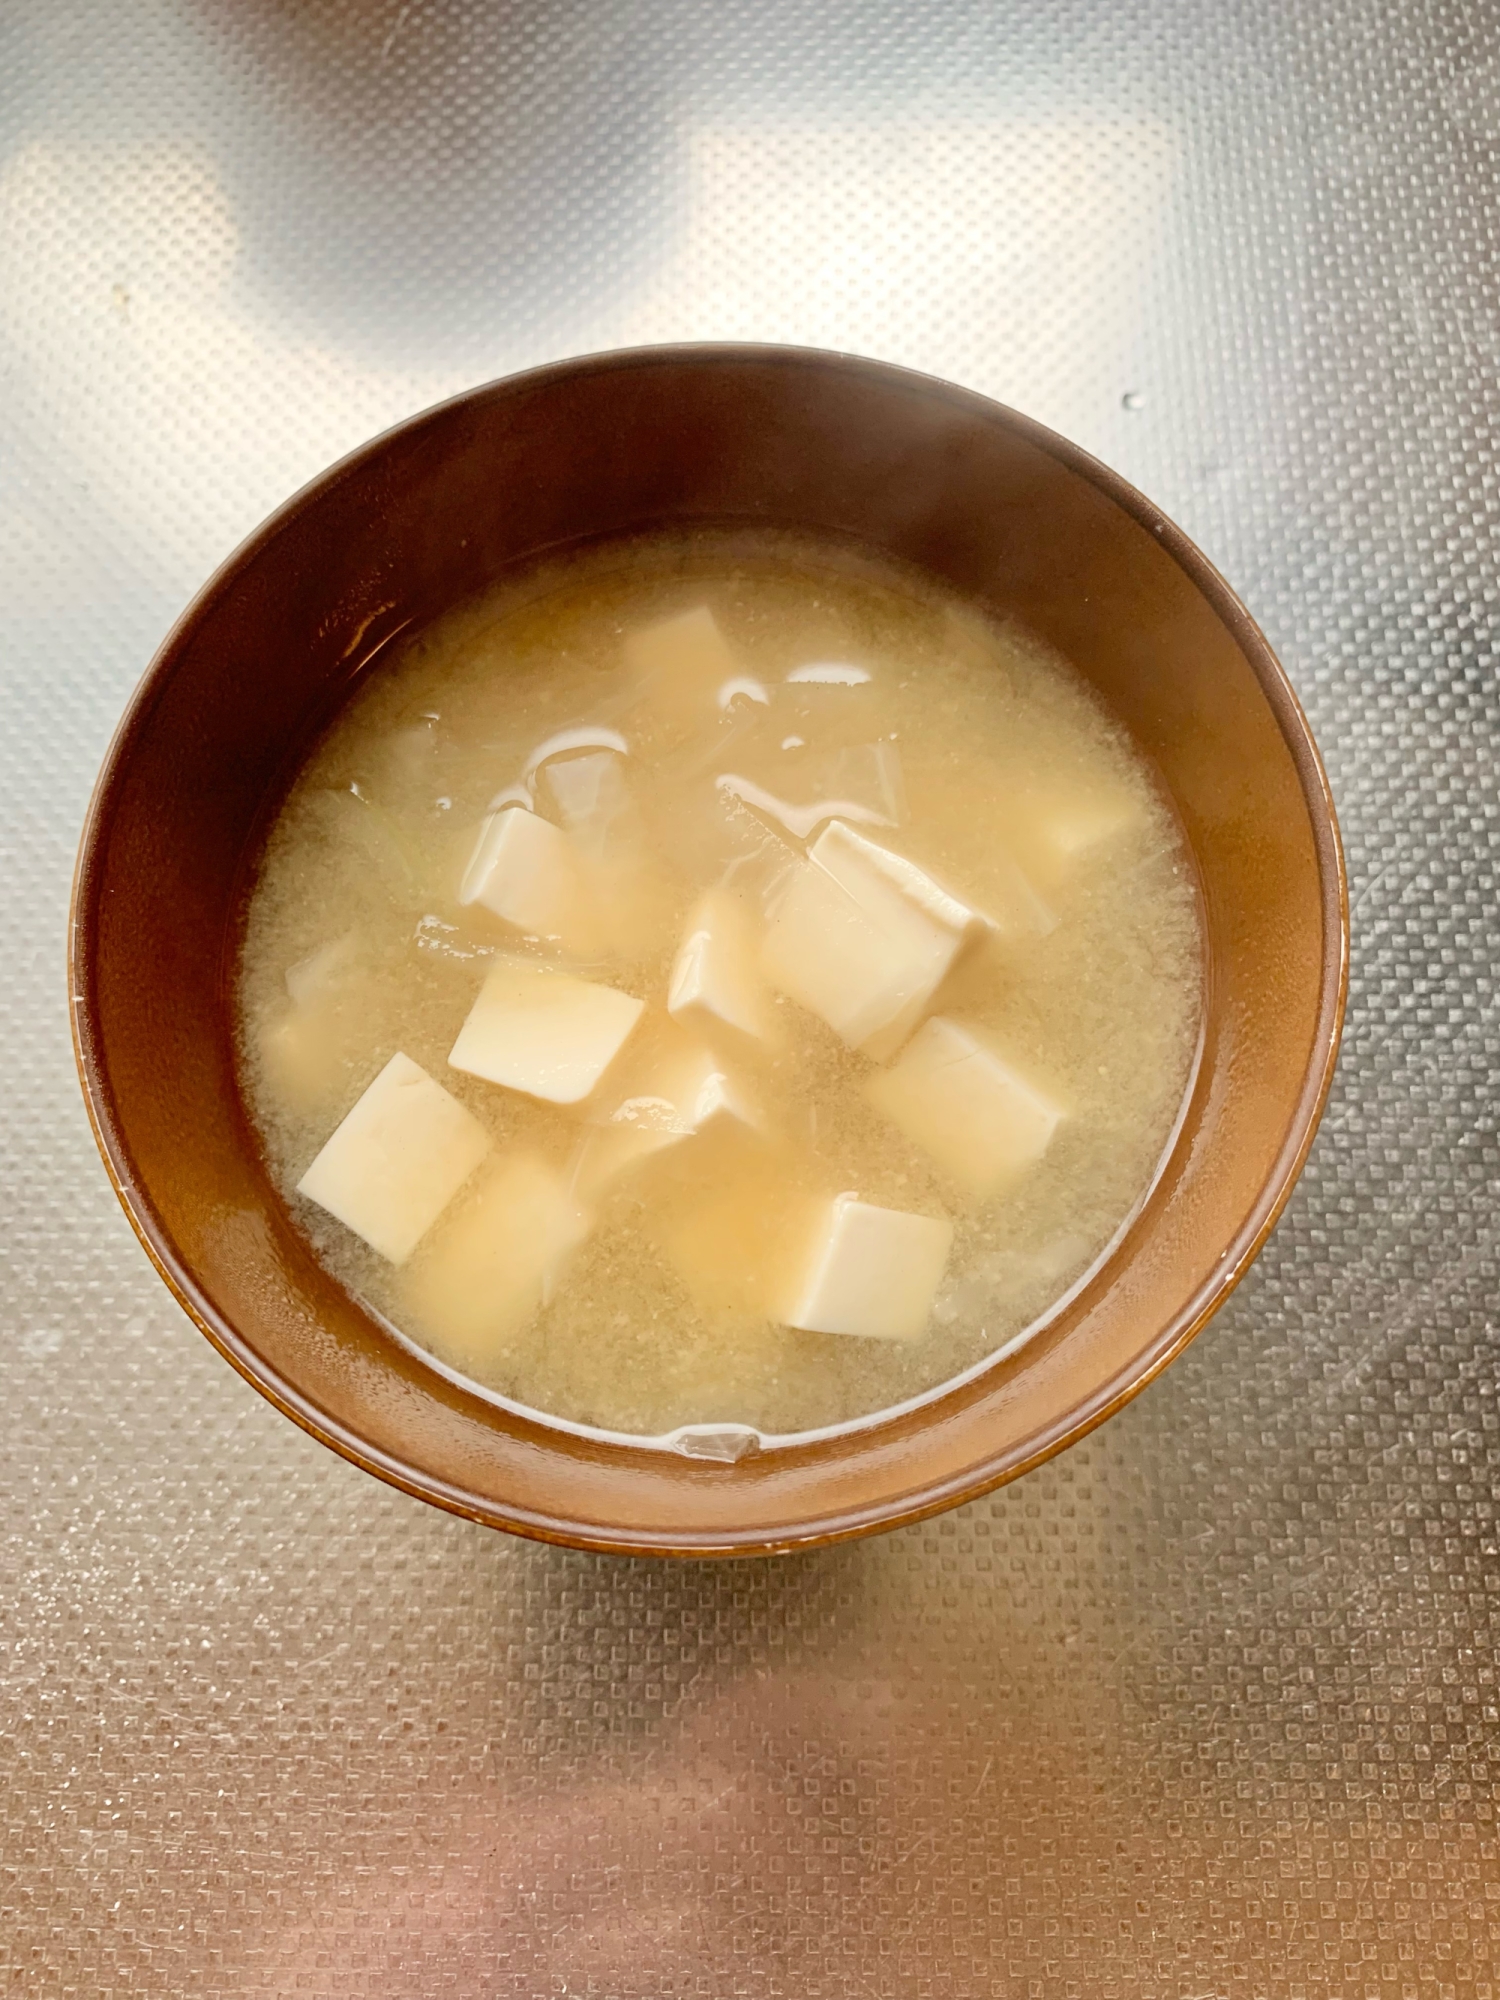 大根と玉ねぎと豆腐のお味噌汁